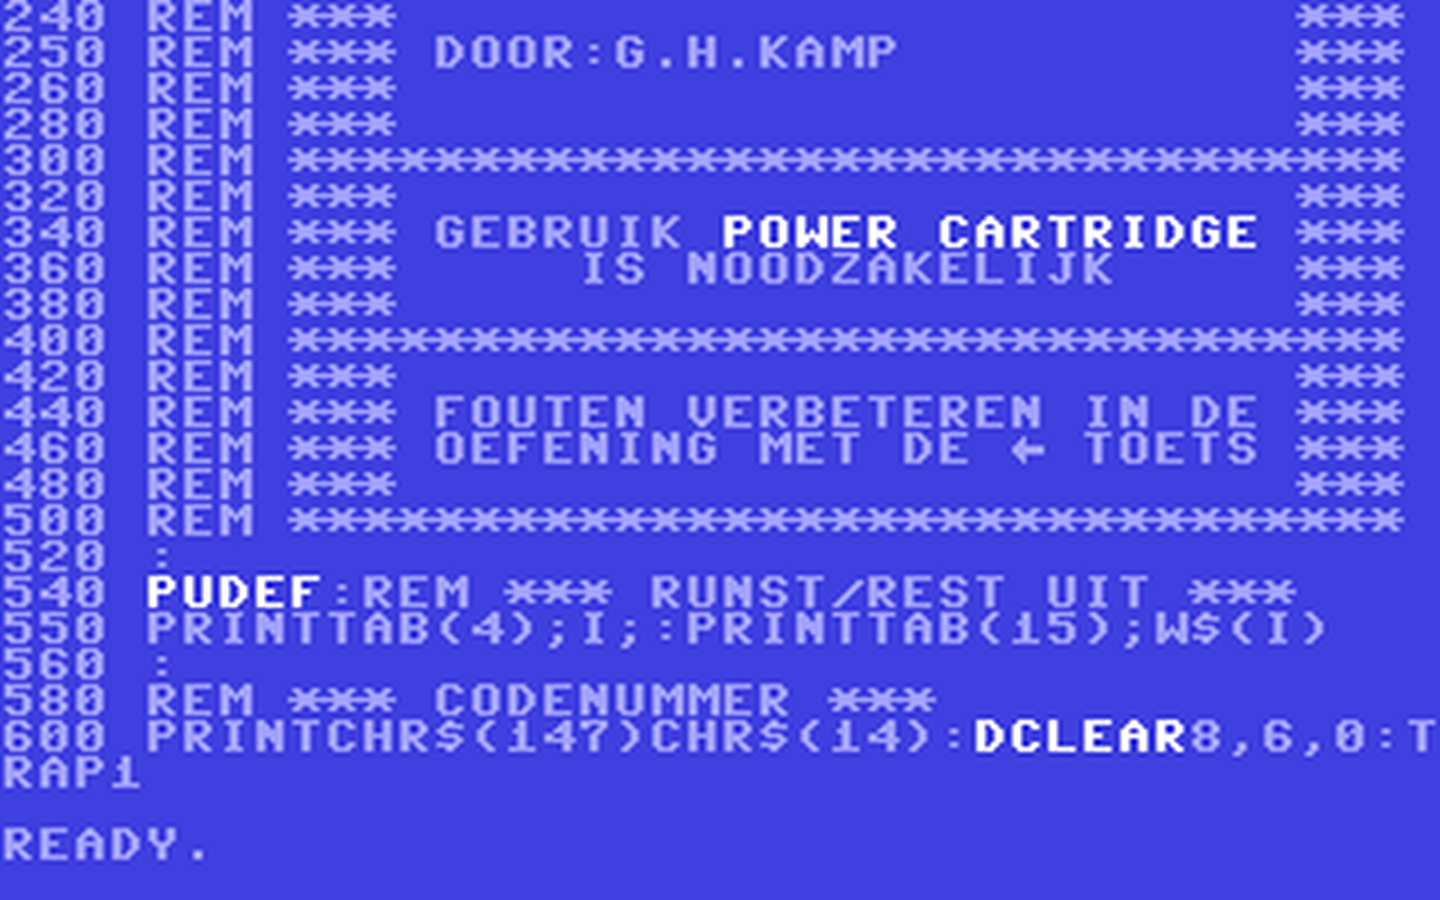 C64 GameBase Woordtraining Commodore_Info 1989